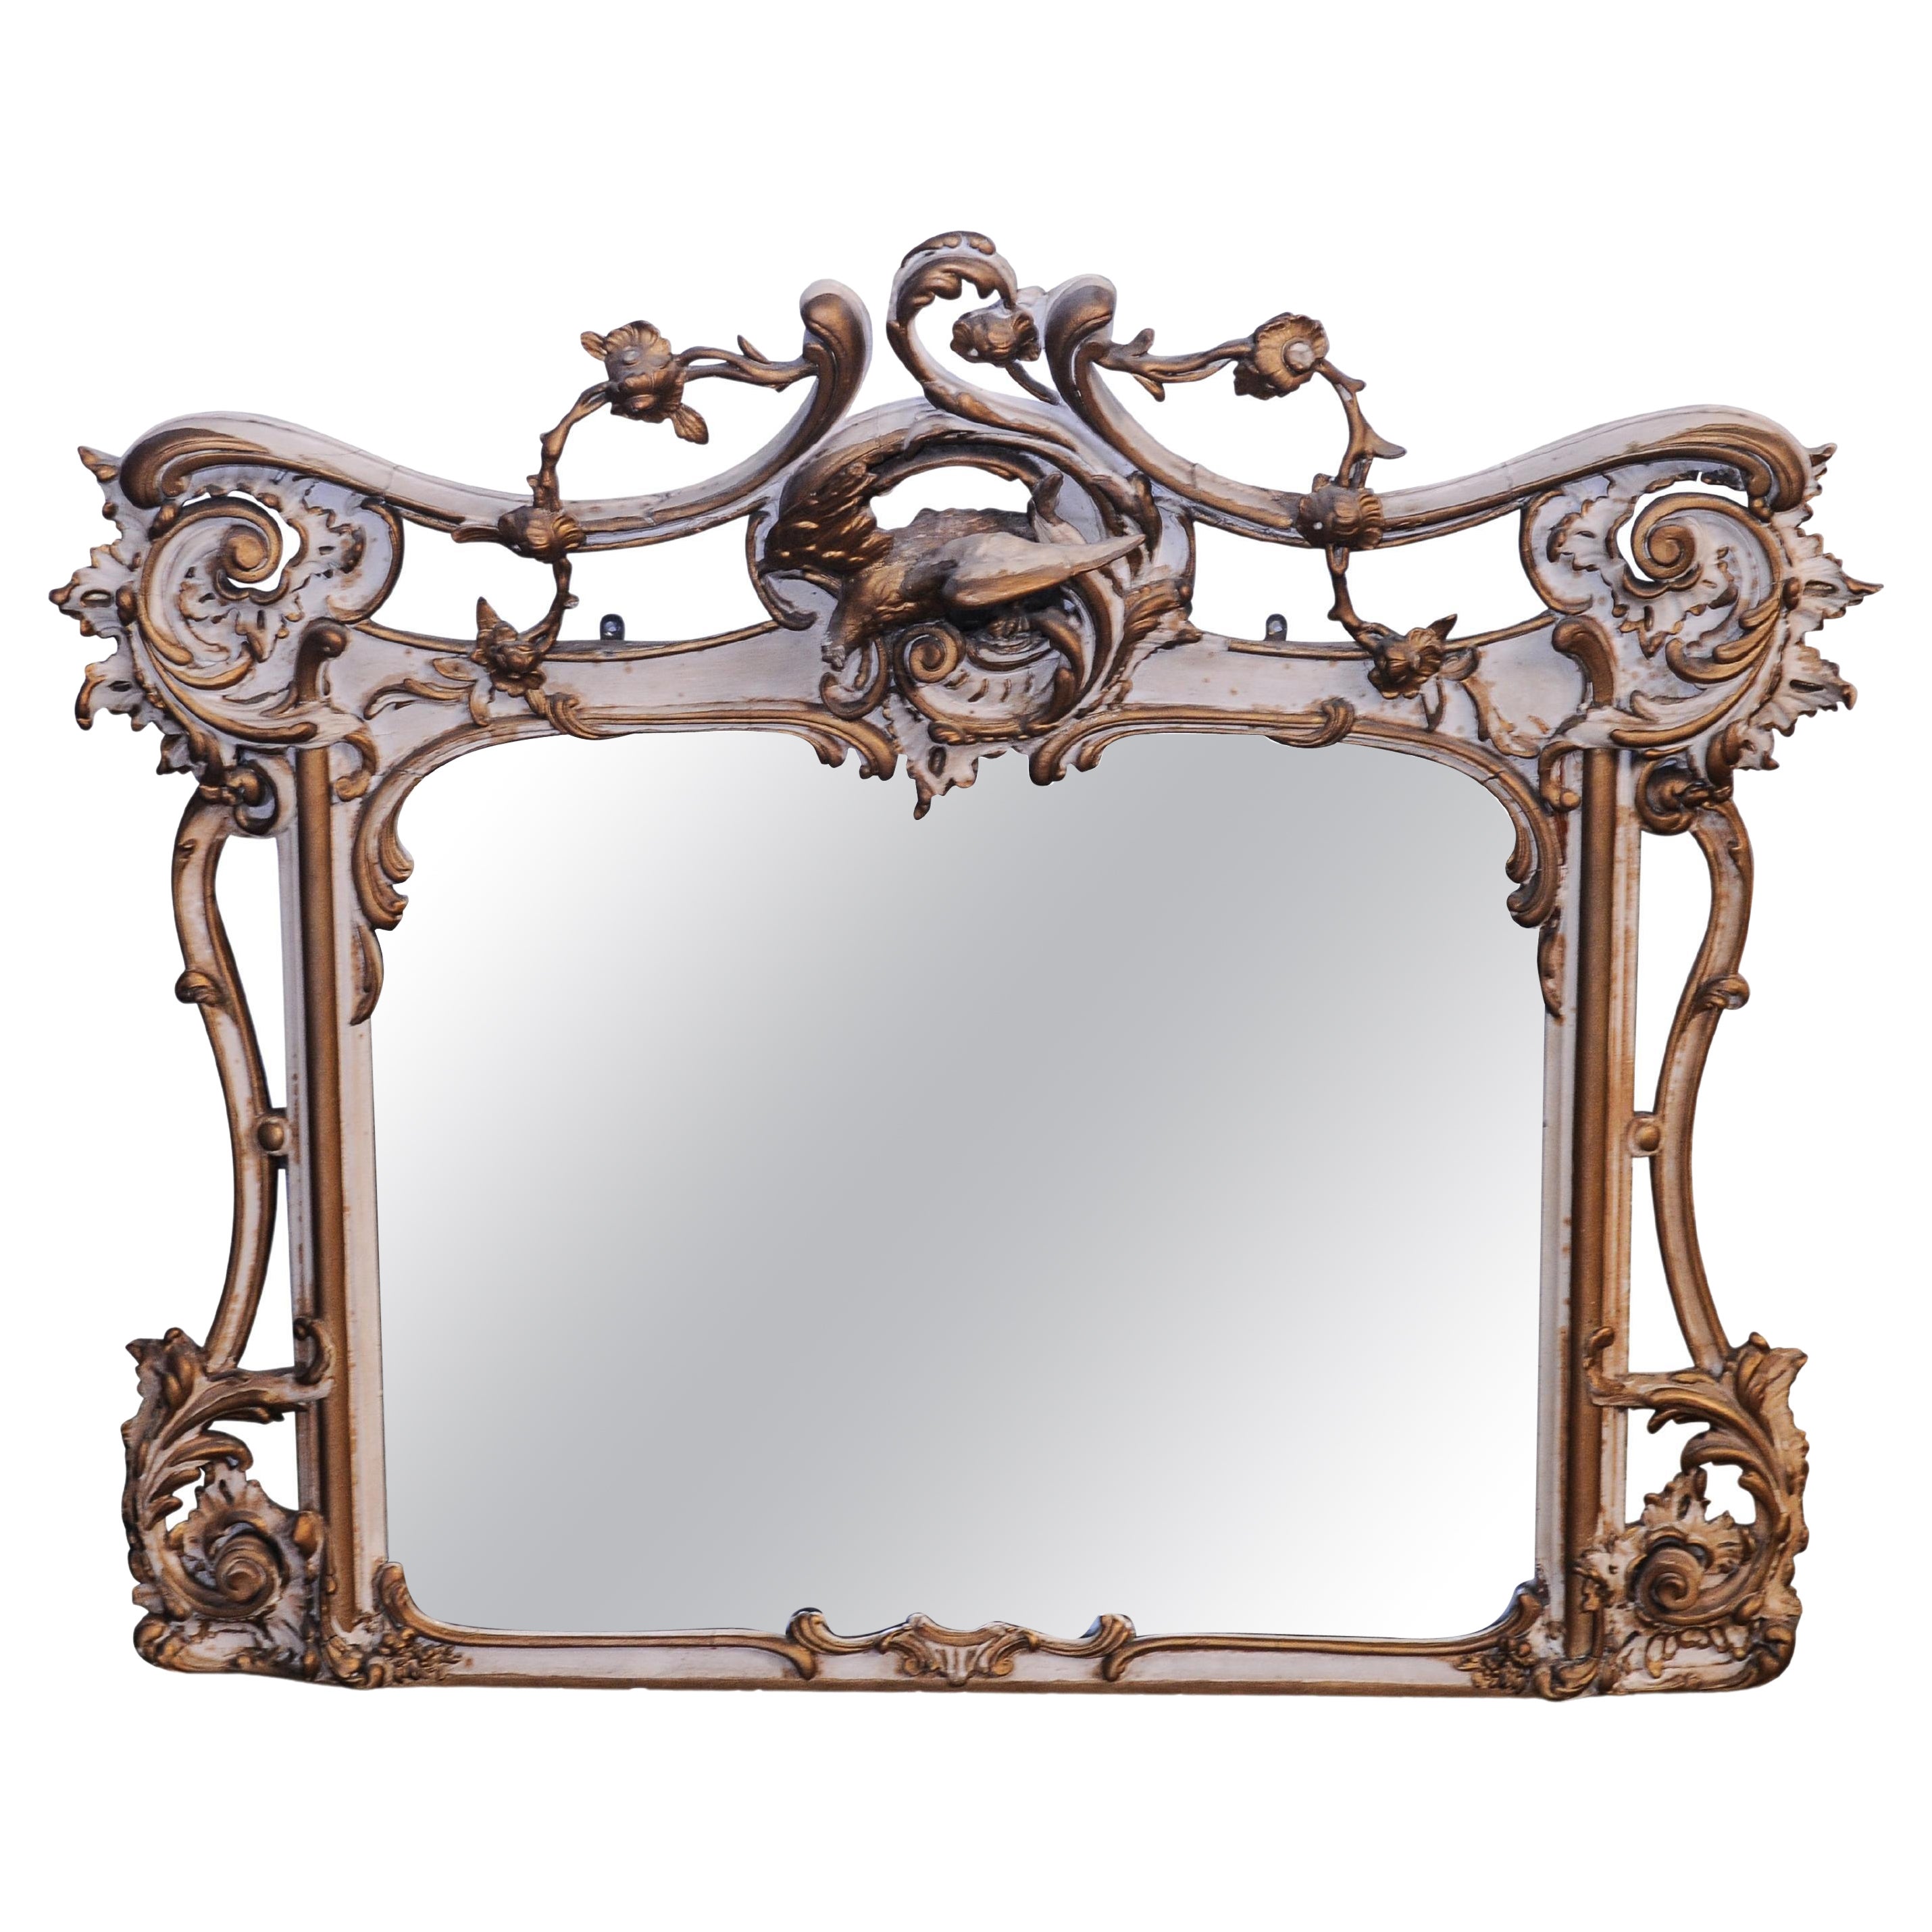 19th Century French Gilt Gesso Rococo Filigree Decorative over Mantel Mirror For Sale